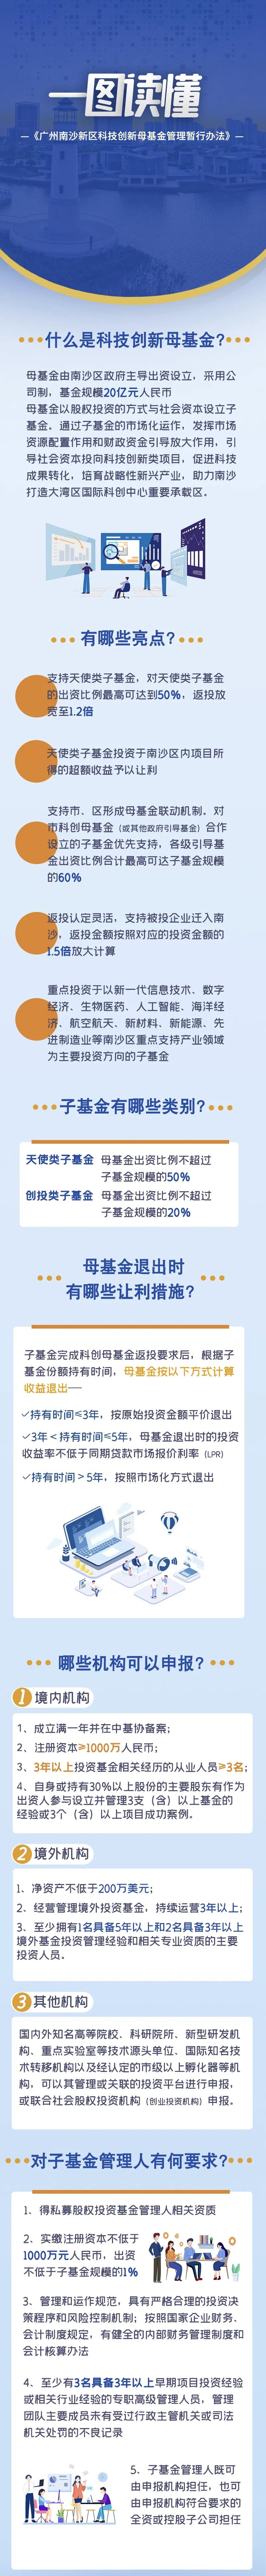 《广州南沙新区科技创新母基金管理暂行办法》